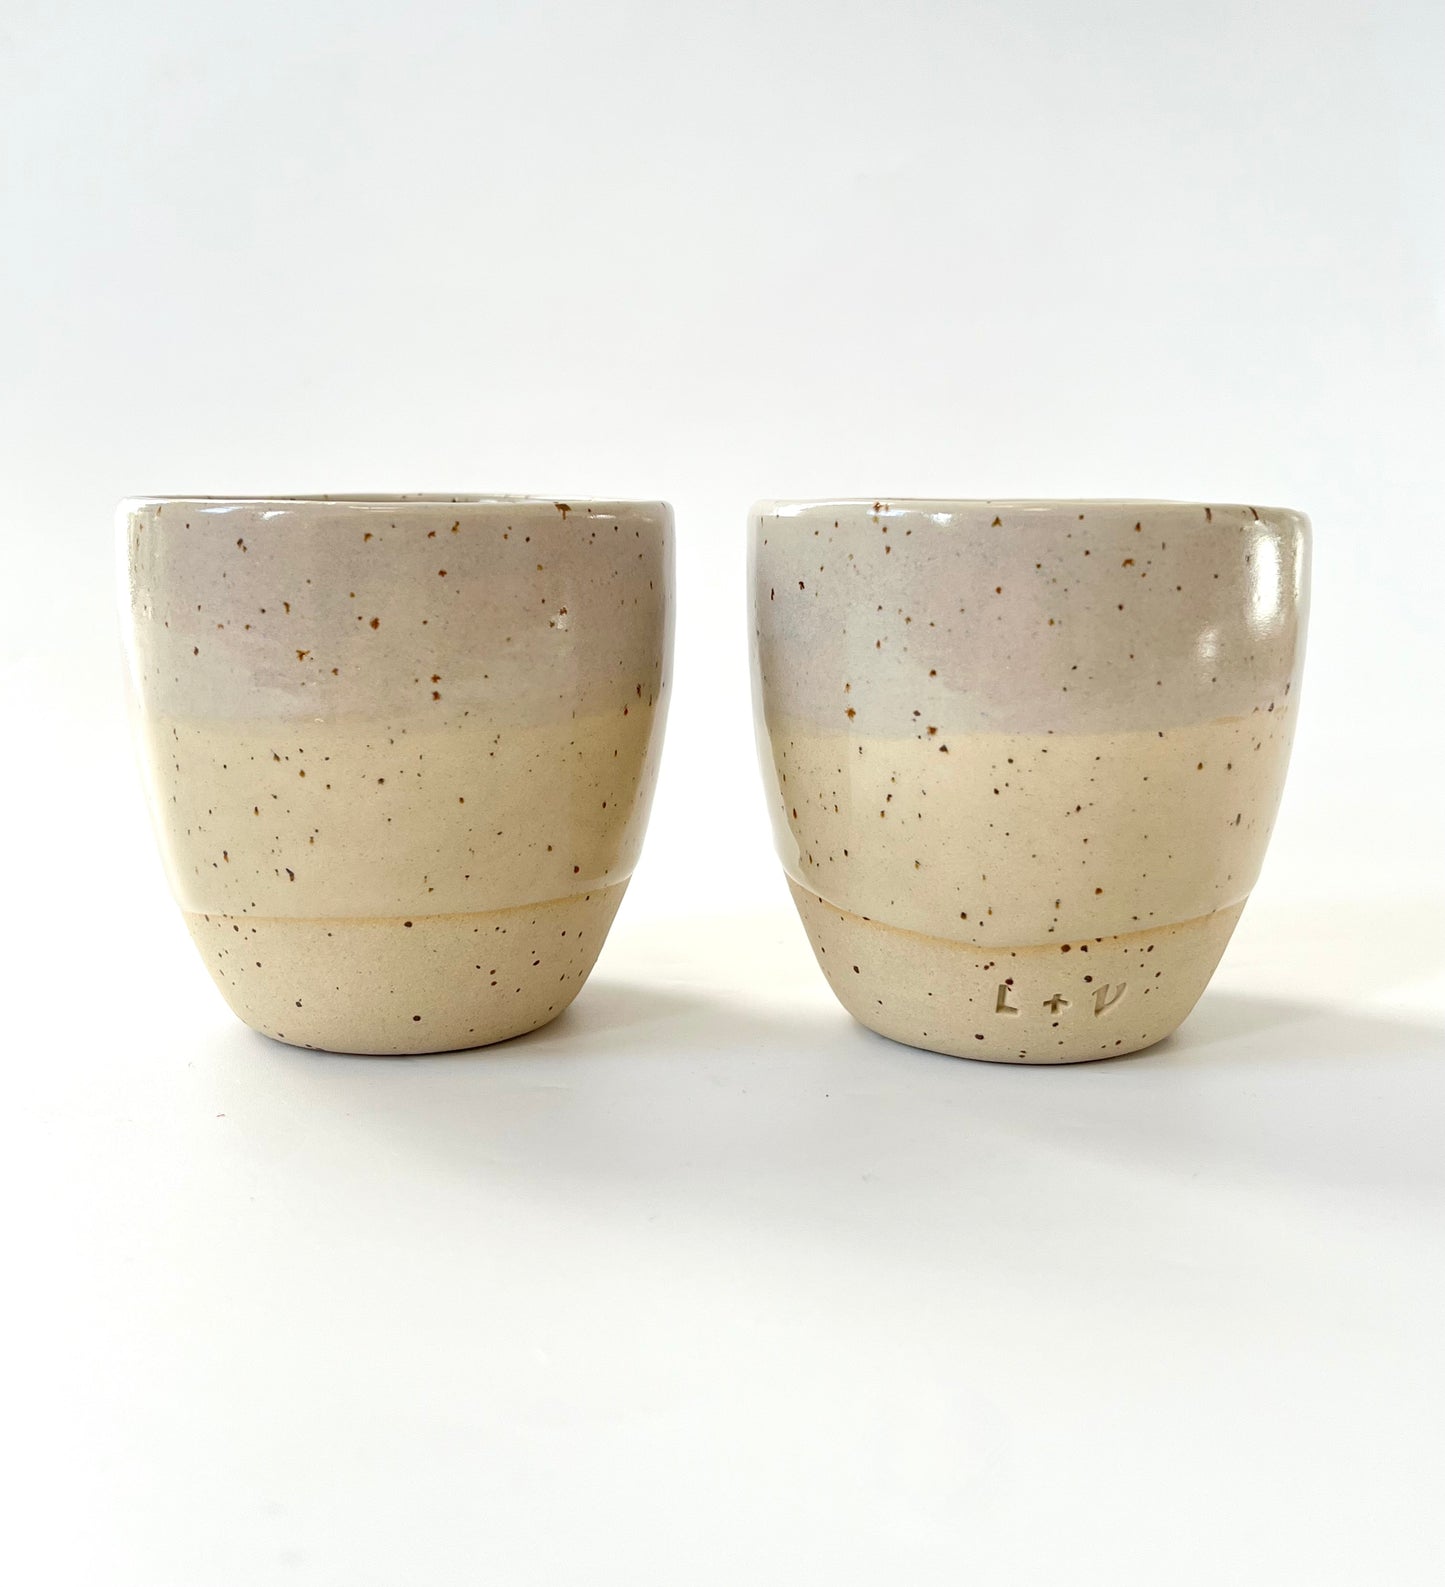 Ceramic Coastal Cup - Grey